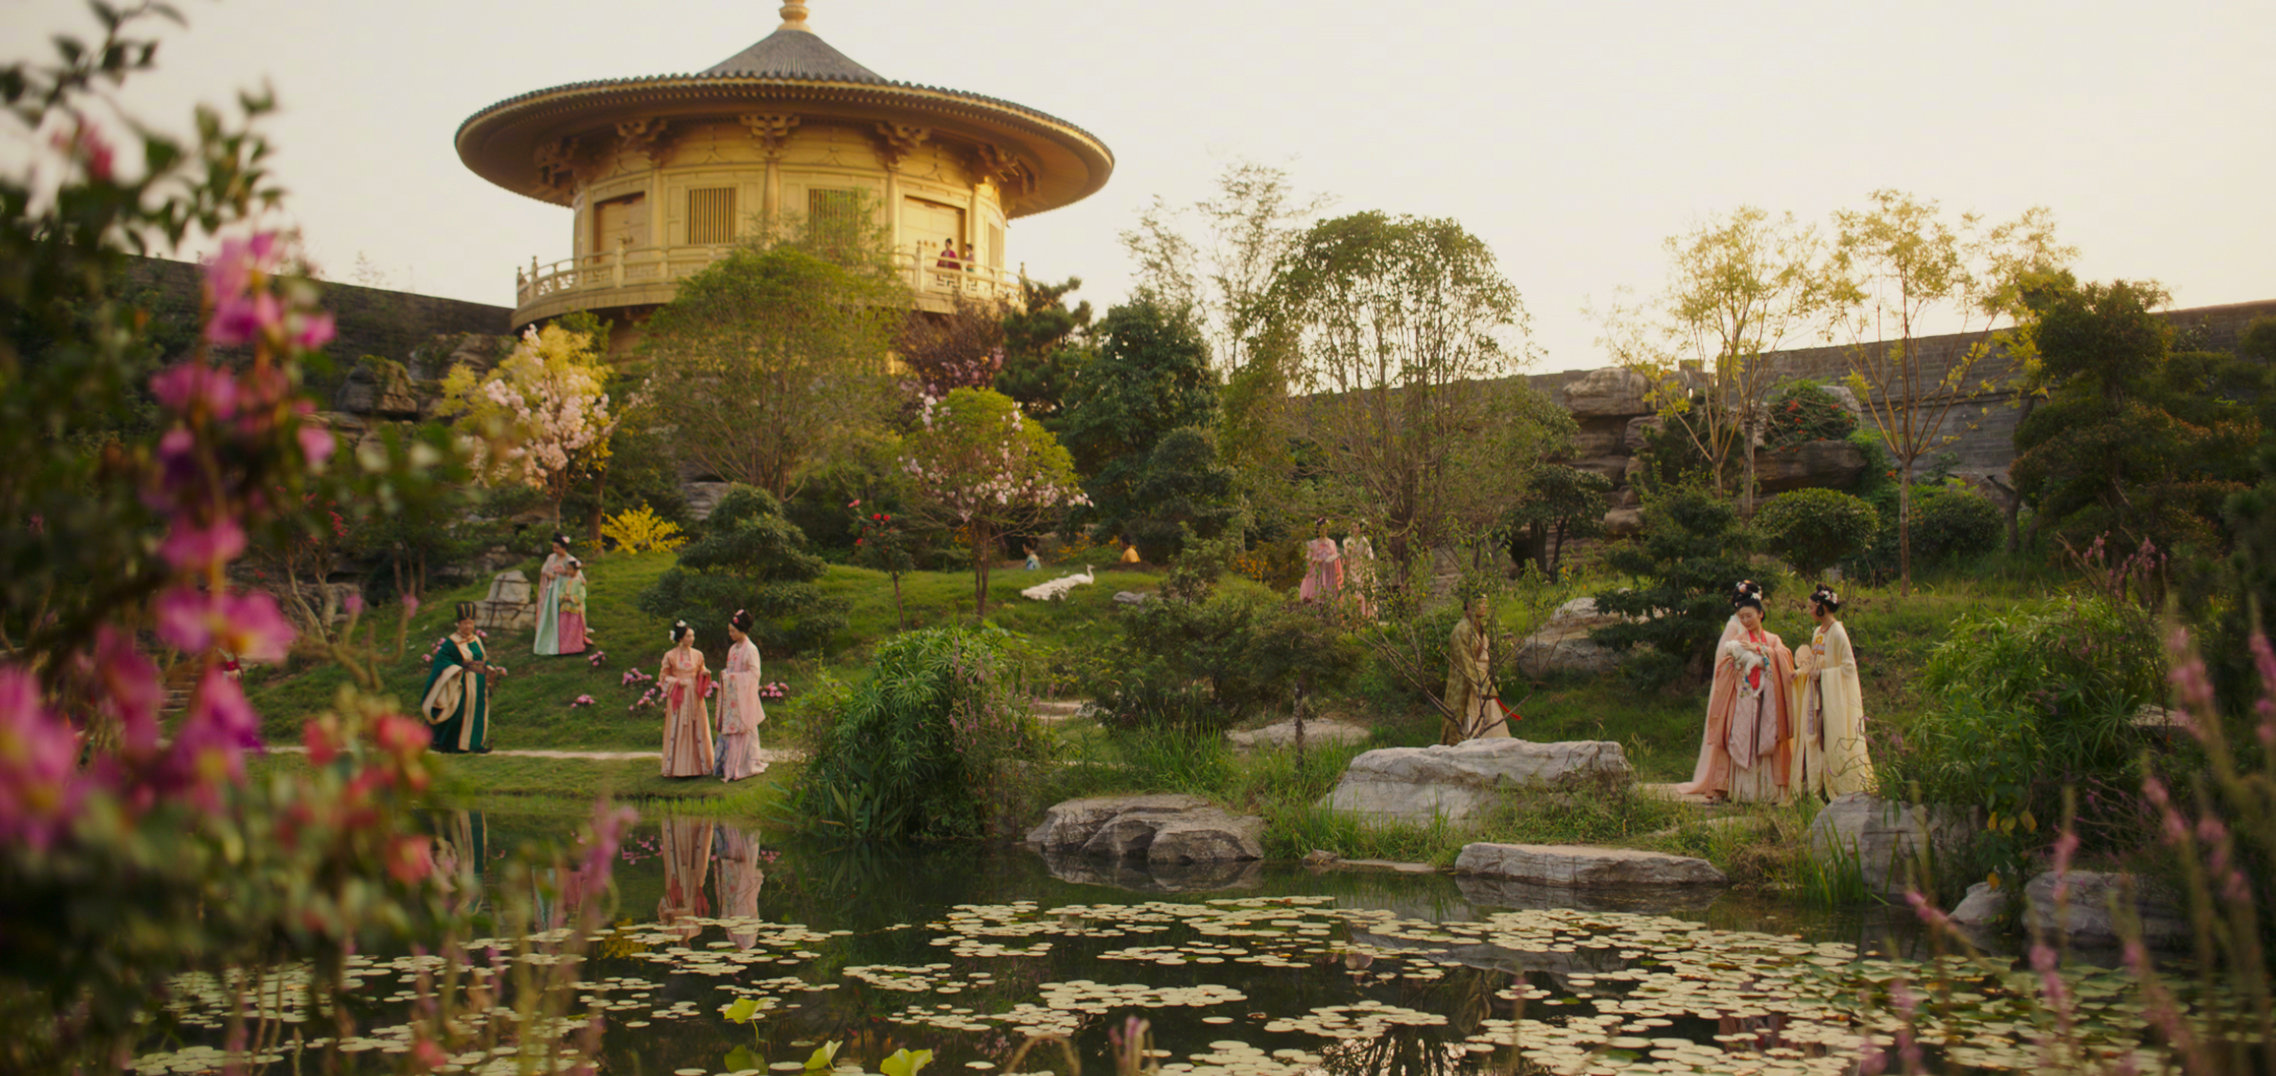 《花木兰》皇城取景地 陈凯歌也曾在此拍电影